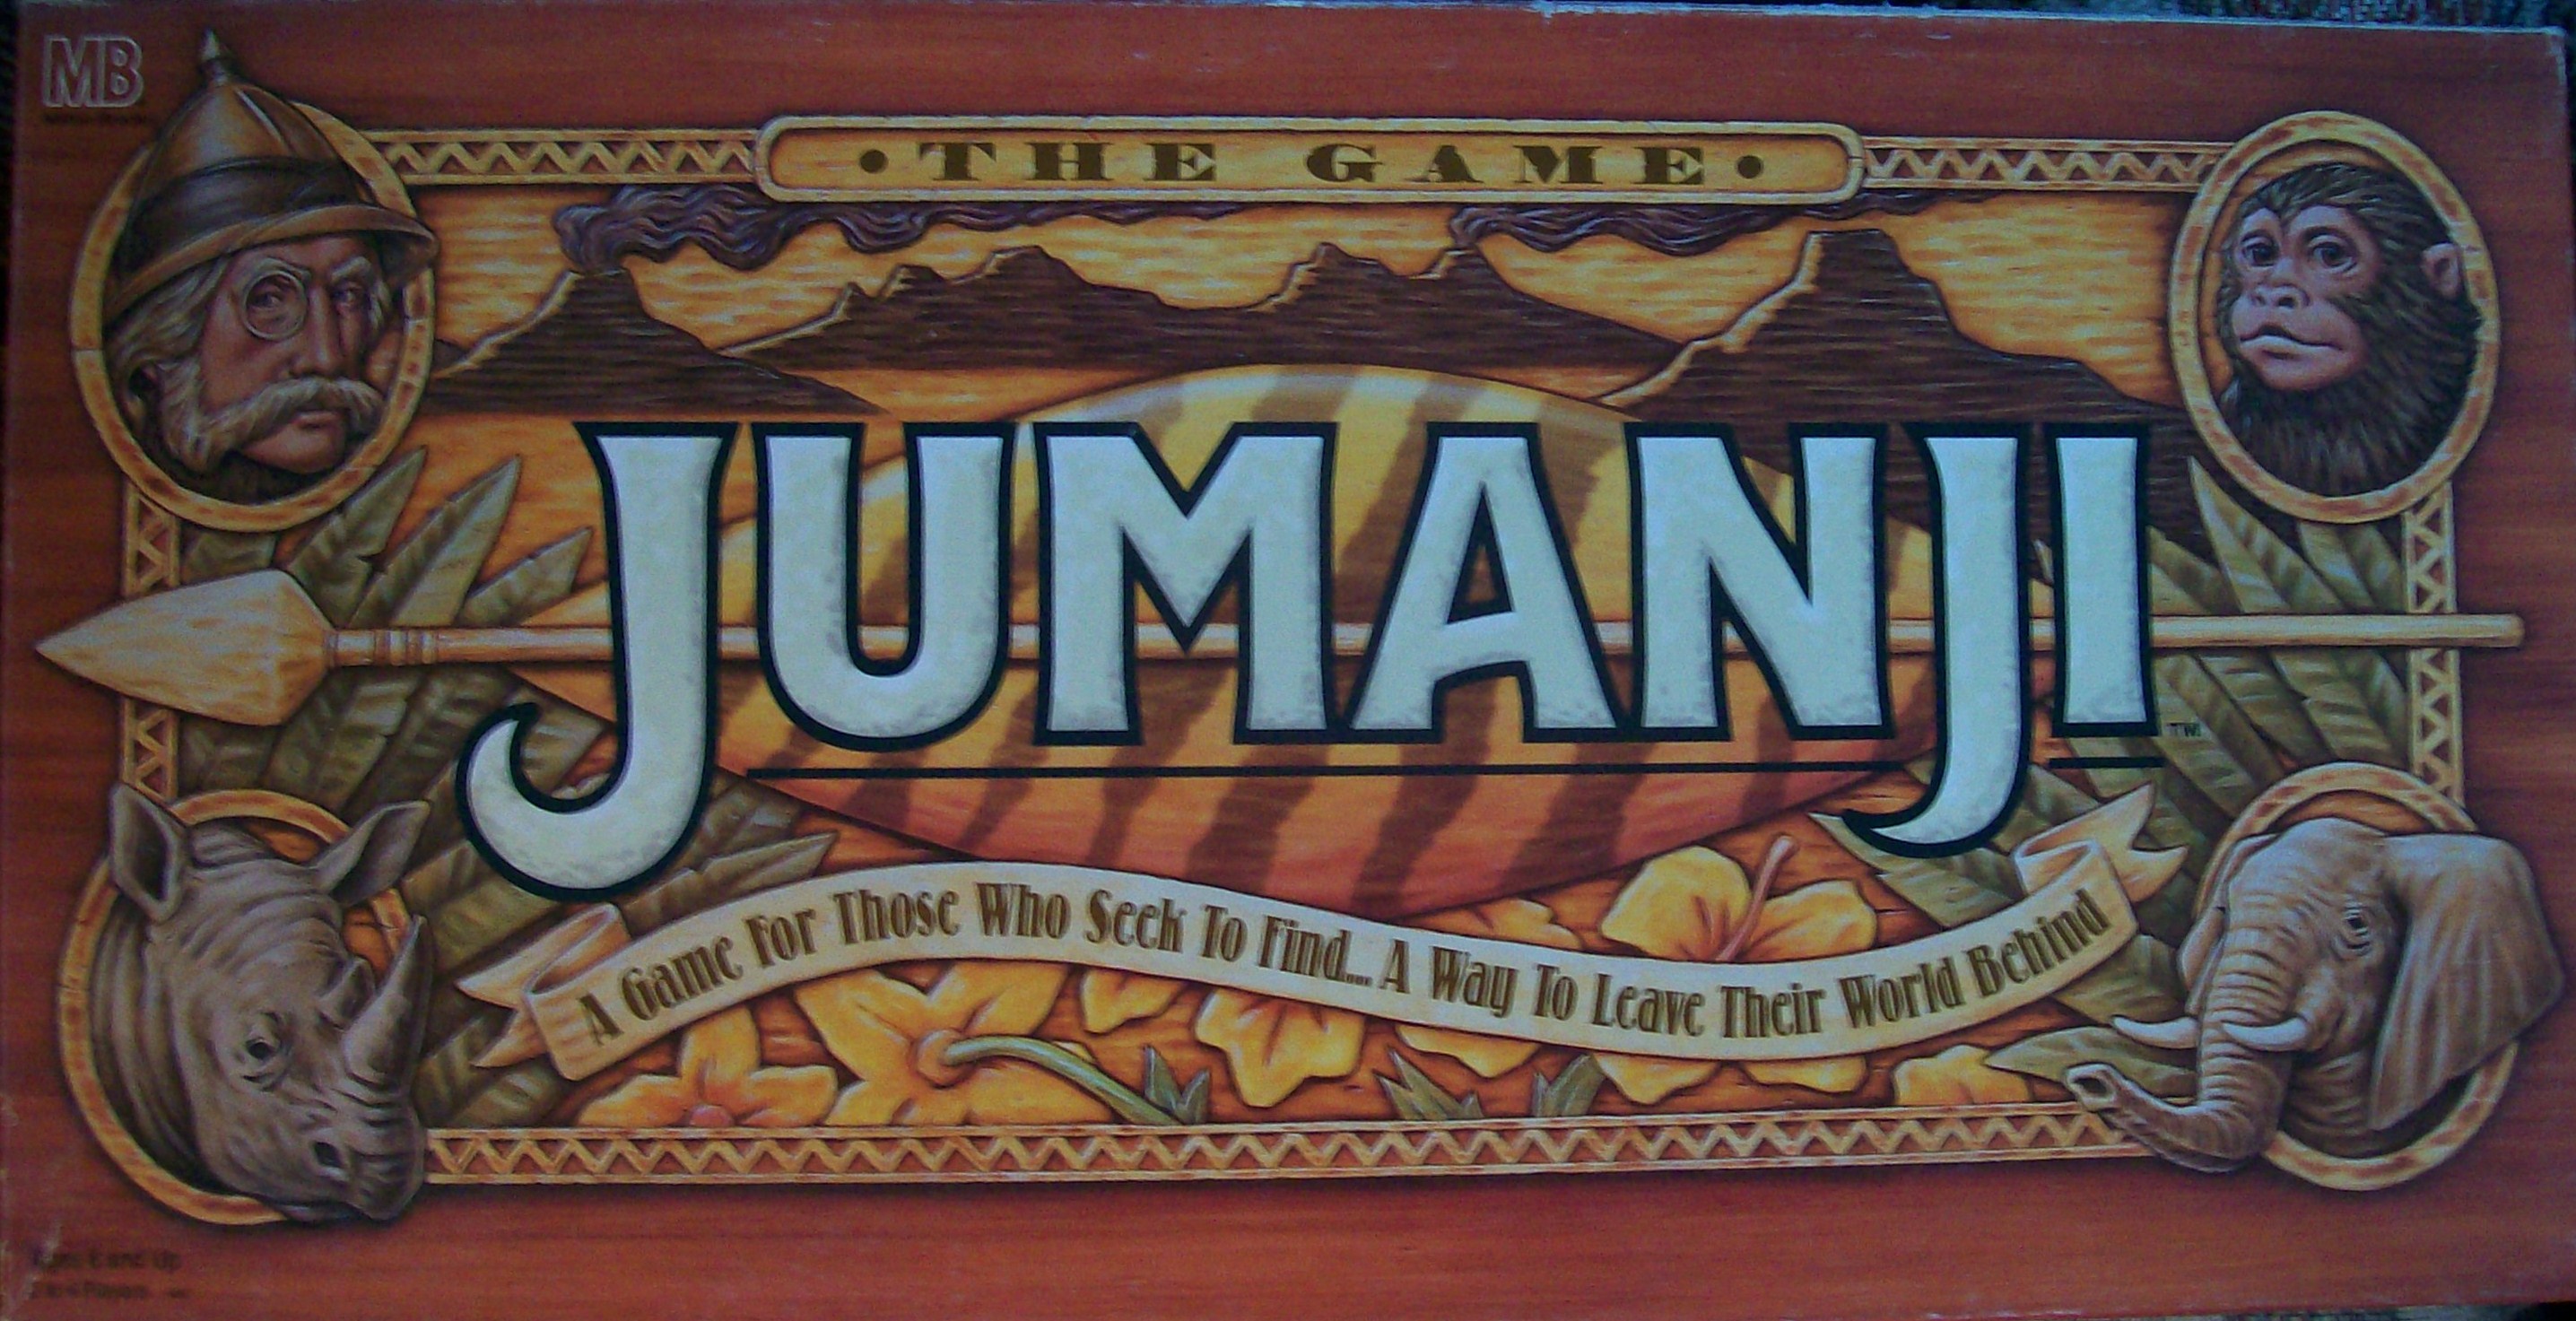 The 1995 Board Game of Jumanji